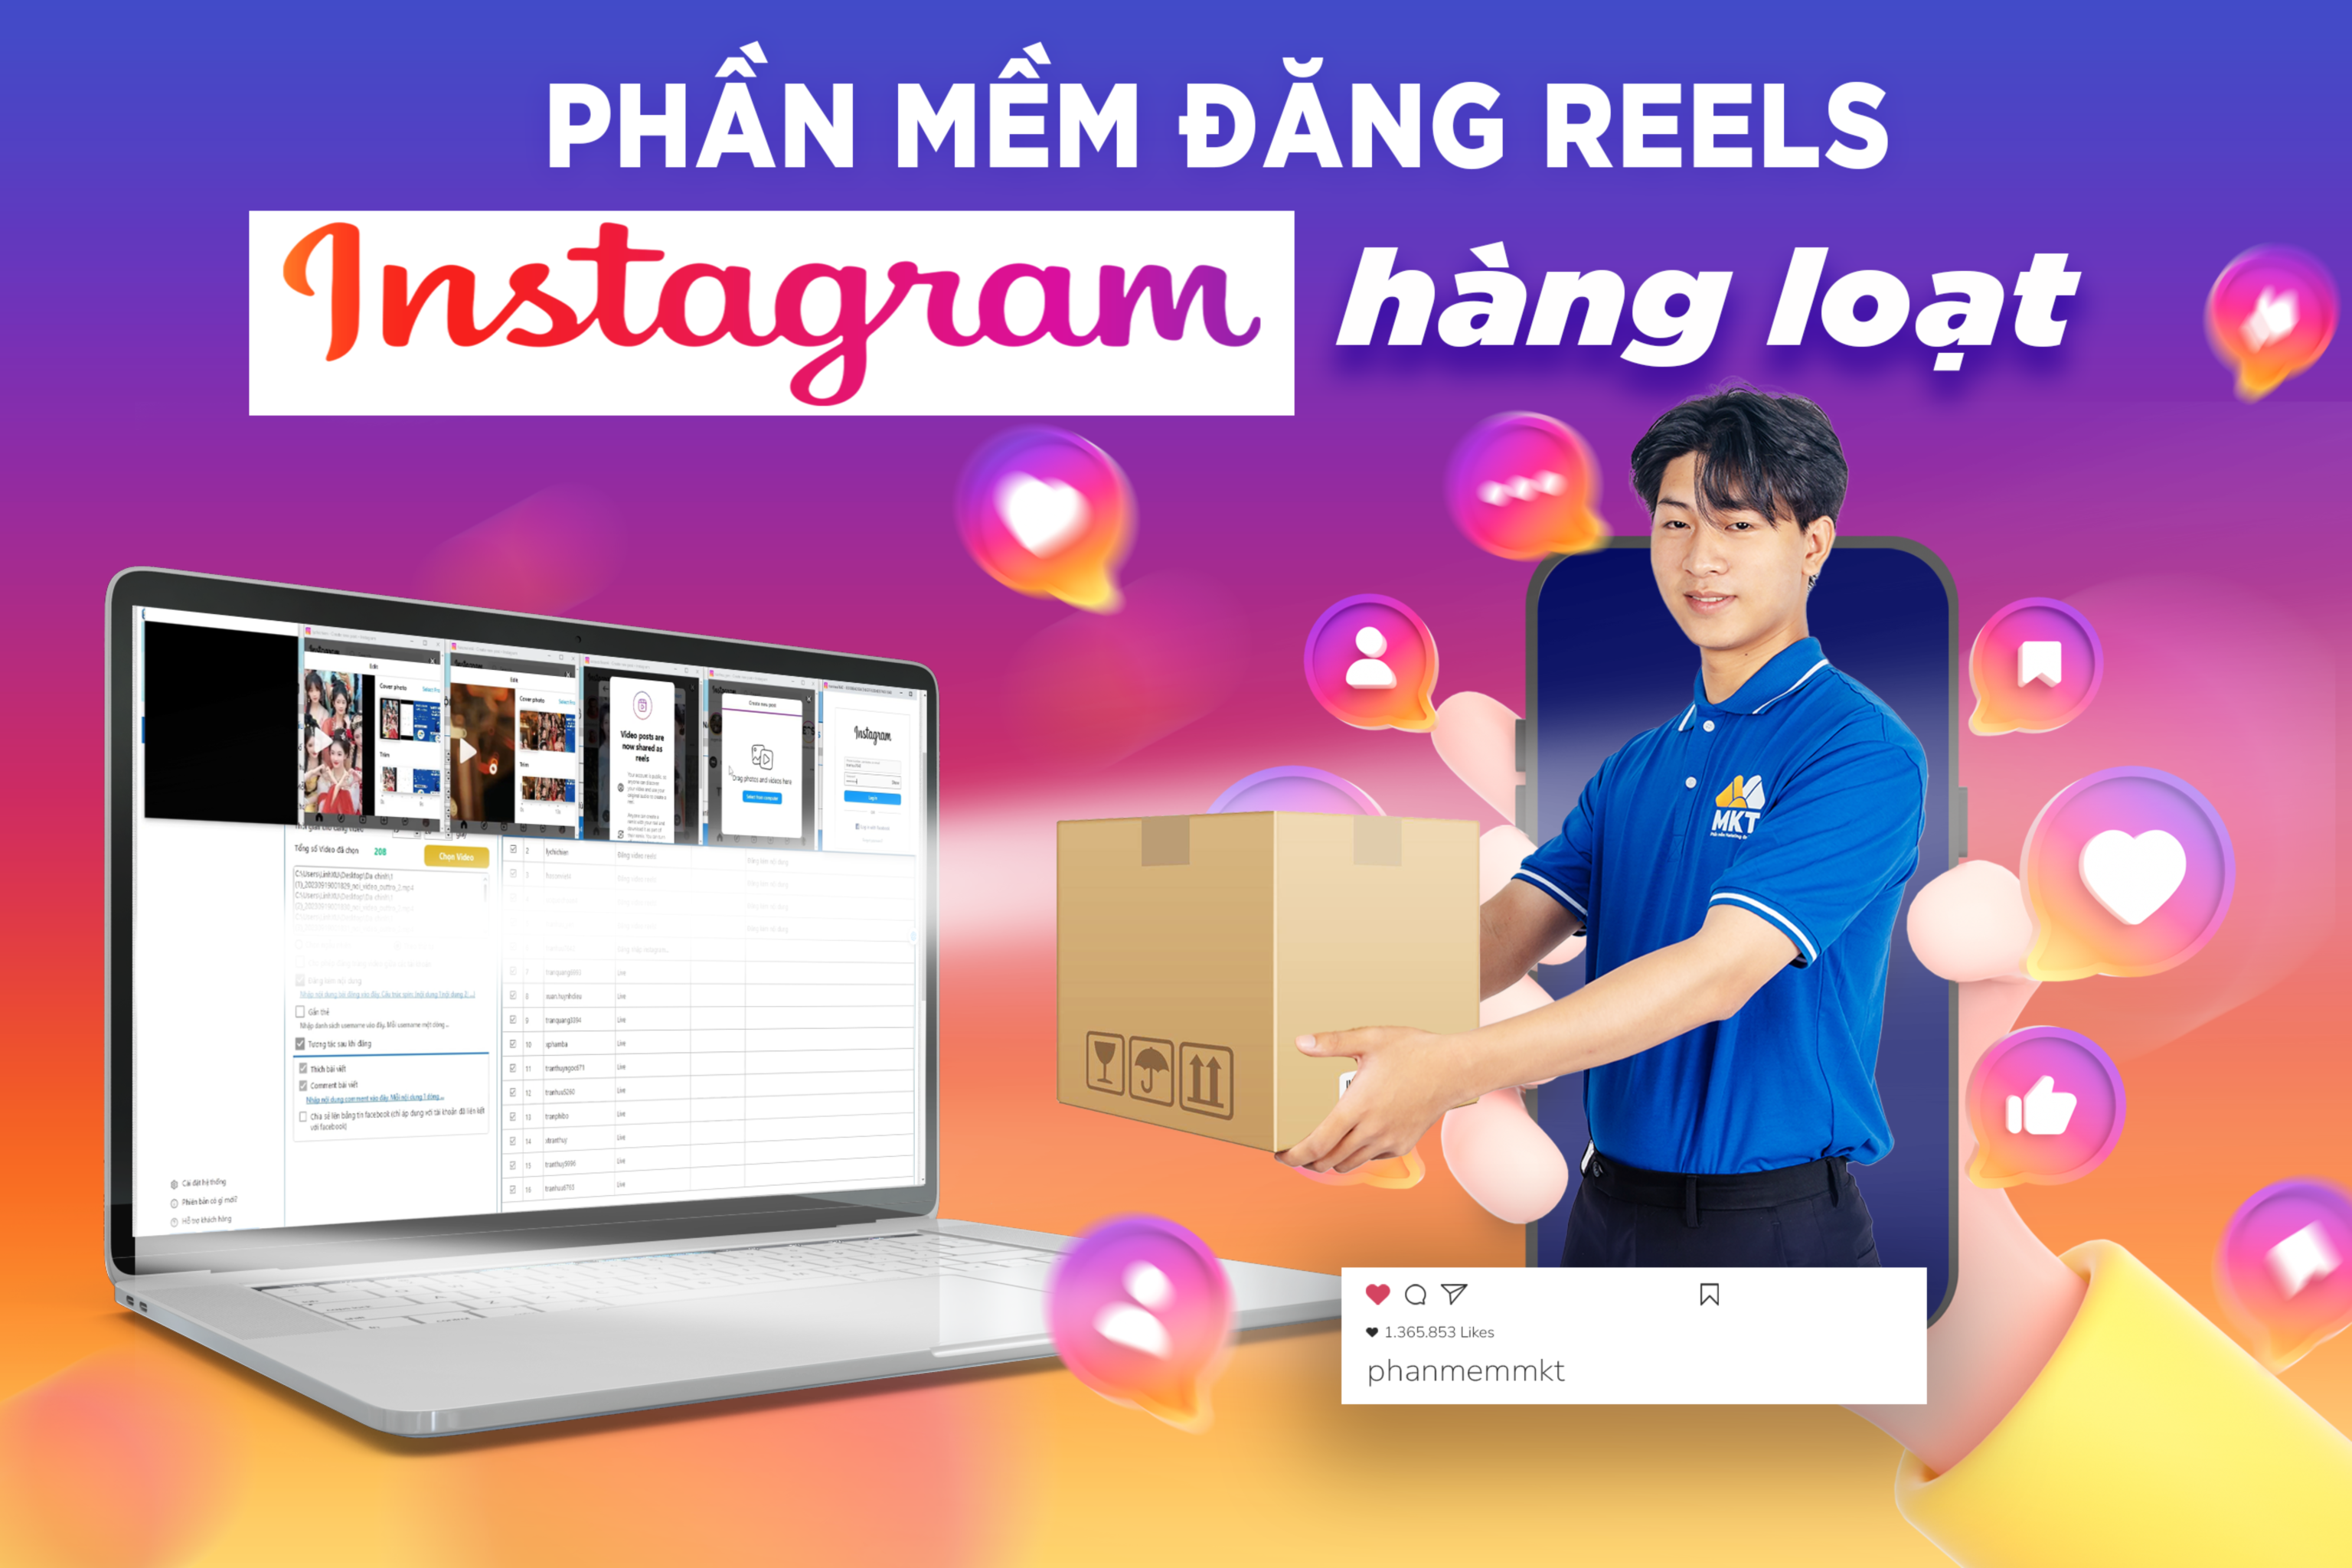 8334264_Phan_mem_dang_reels_Instagram_hang_loat-Recovered.png